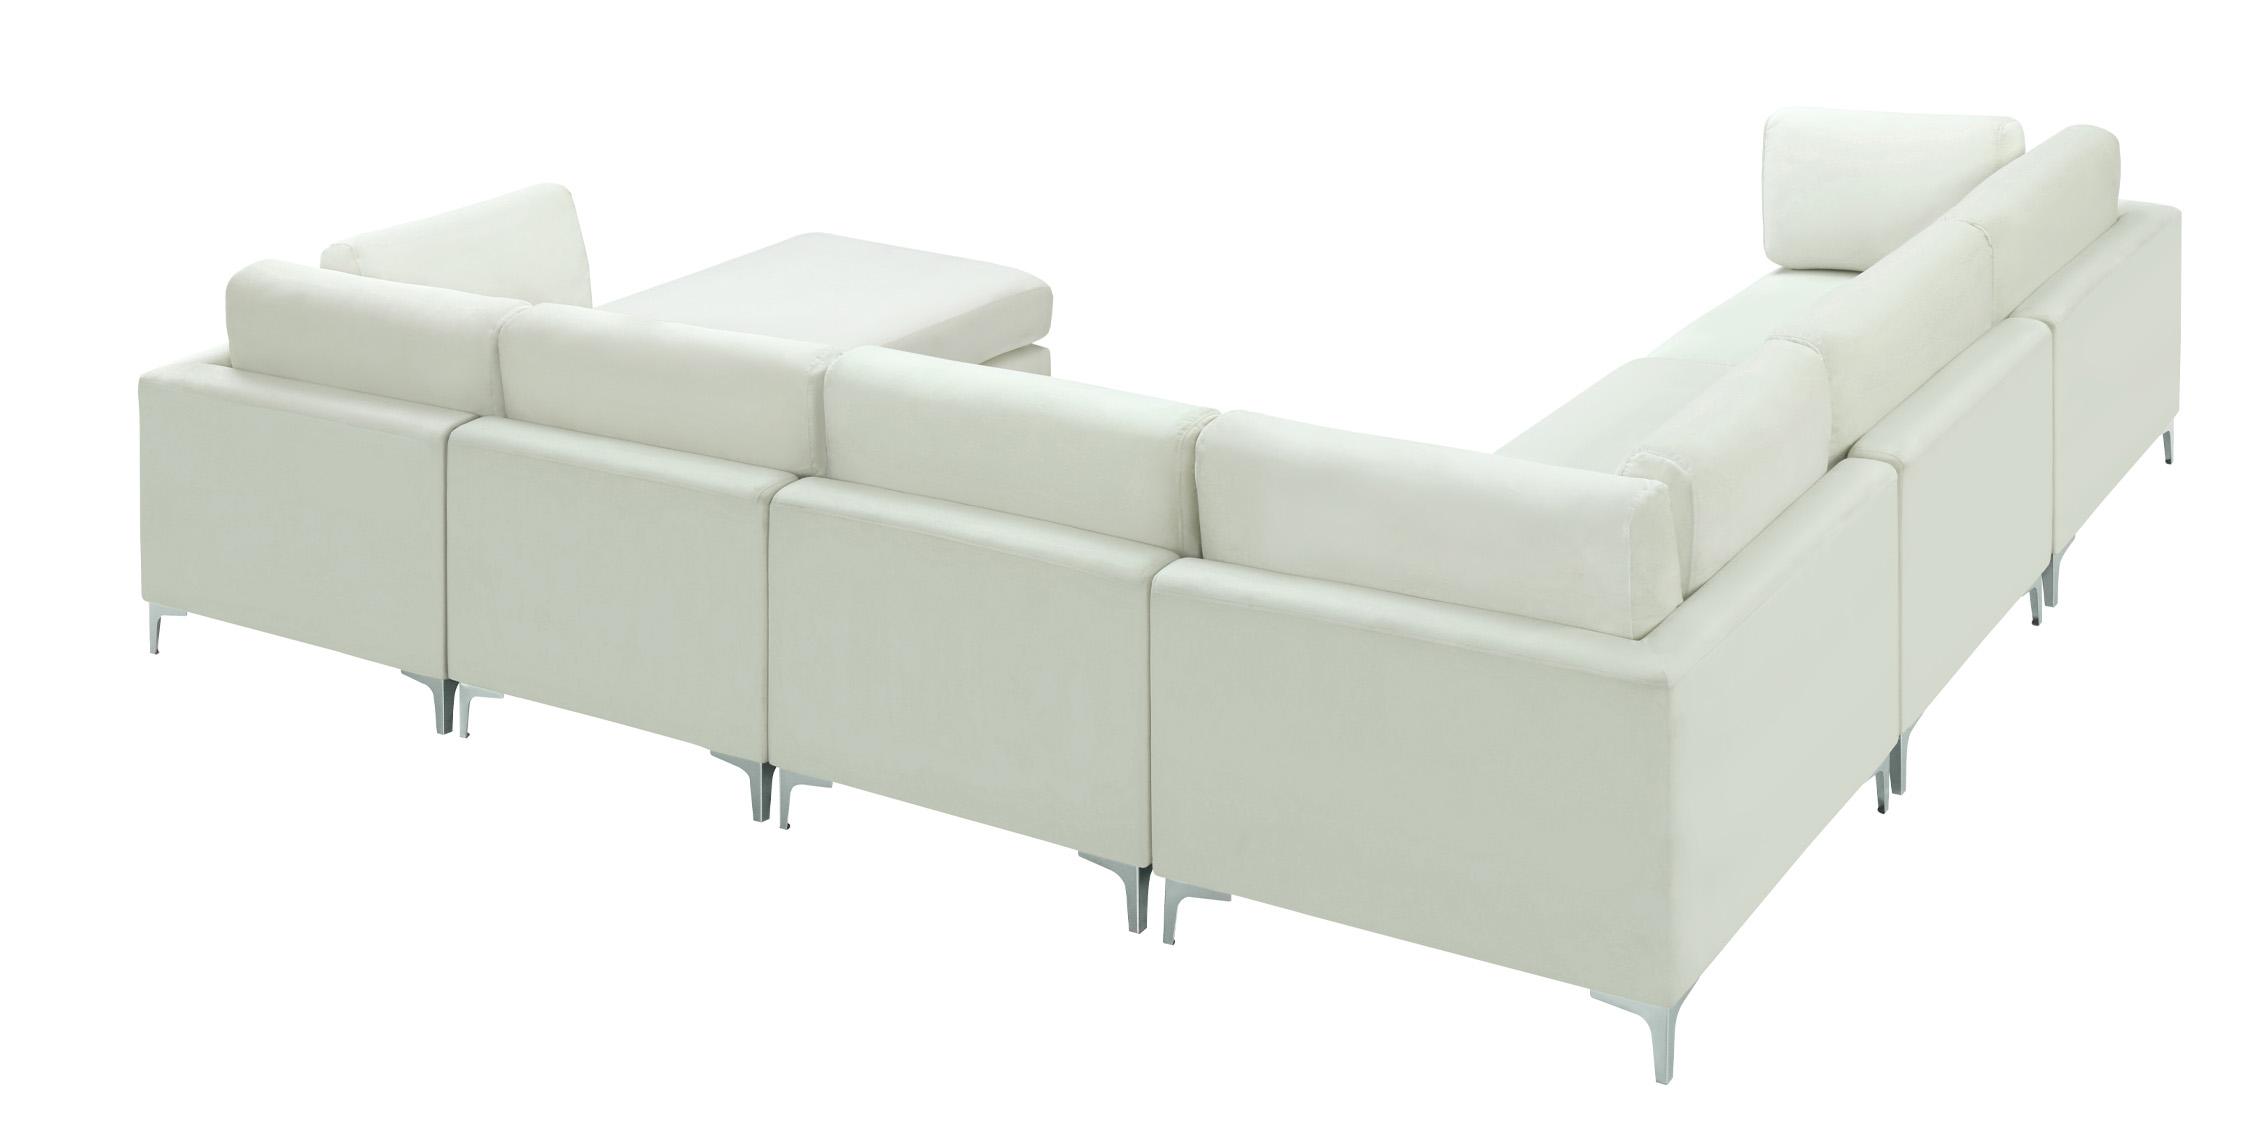 

    
Meridian Furniture JULIA 605Cream-Sec7A Modular Sectional Sofa Cream 605Cream-Sec7A
